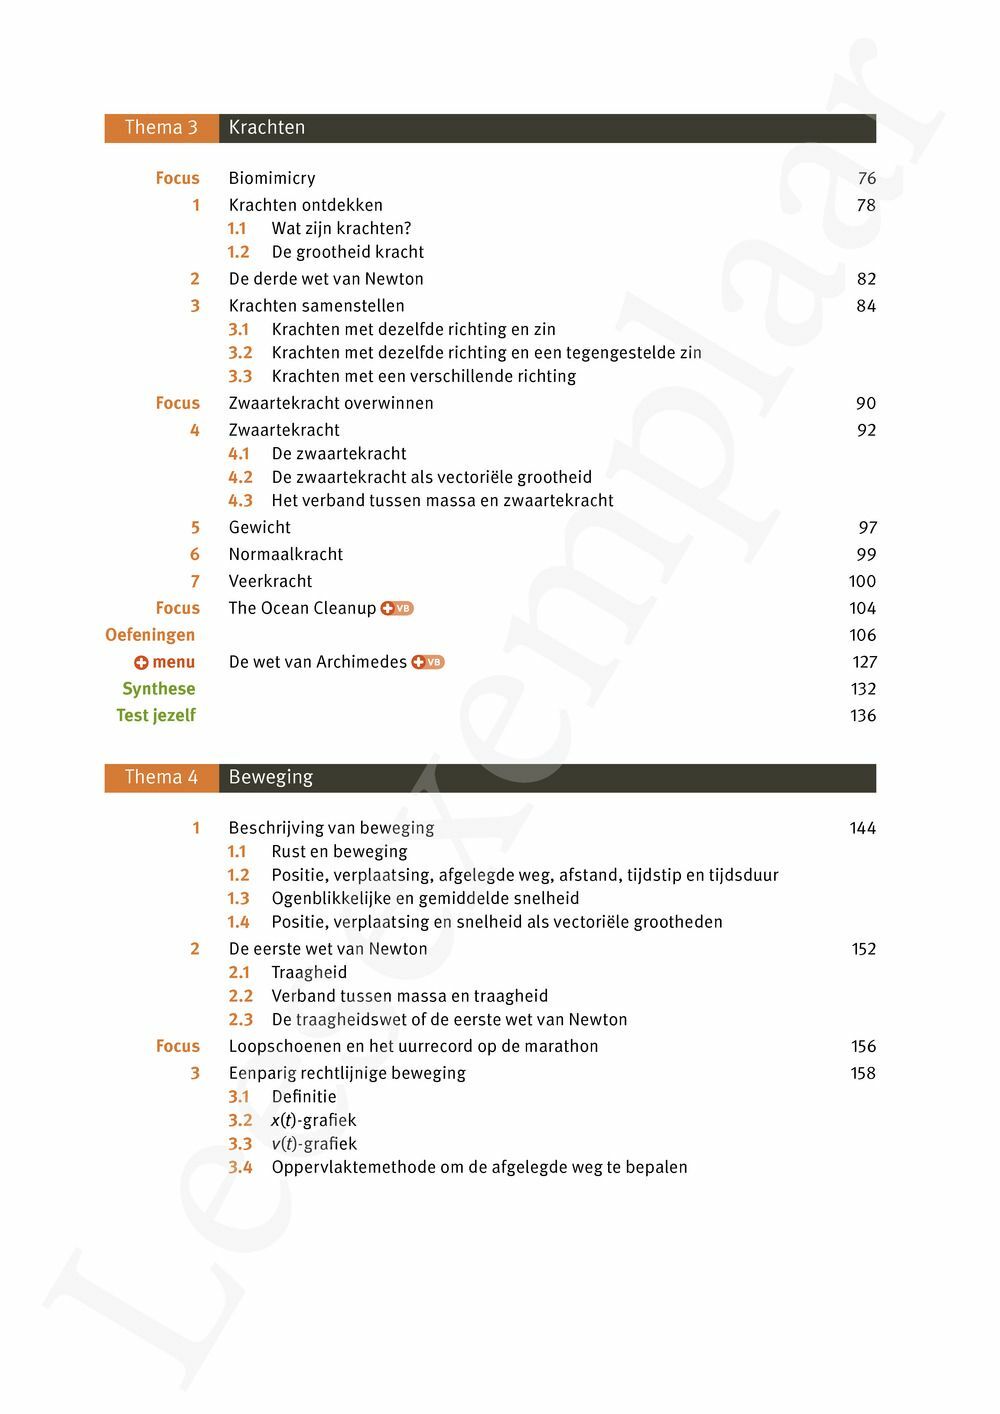 Preview: Focus Fysica 3.1 Leerwerkboek (incl. Pelckmans Portaal)